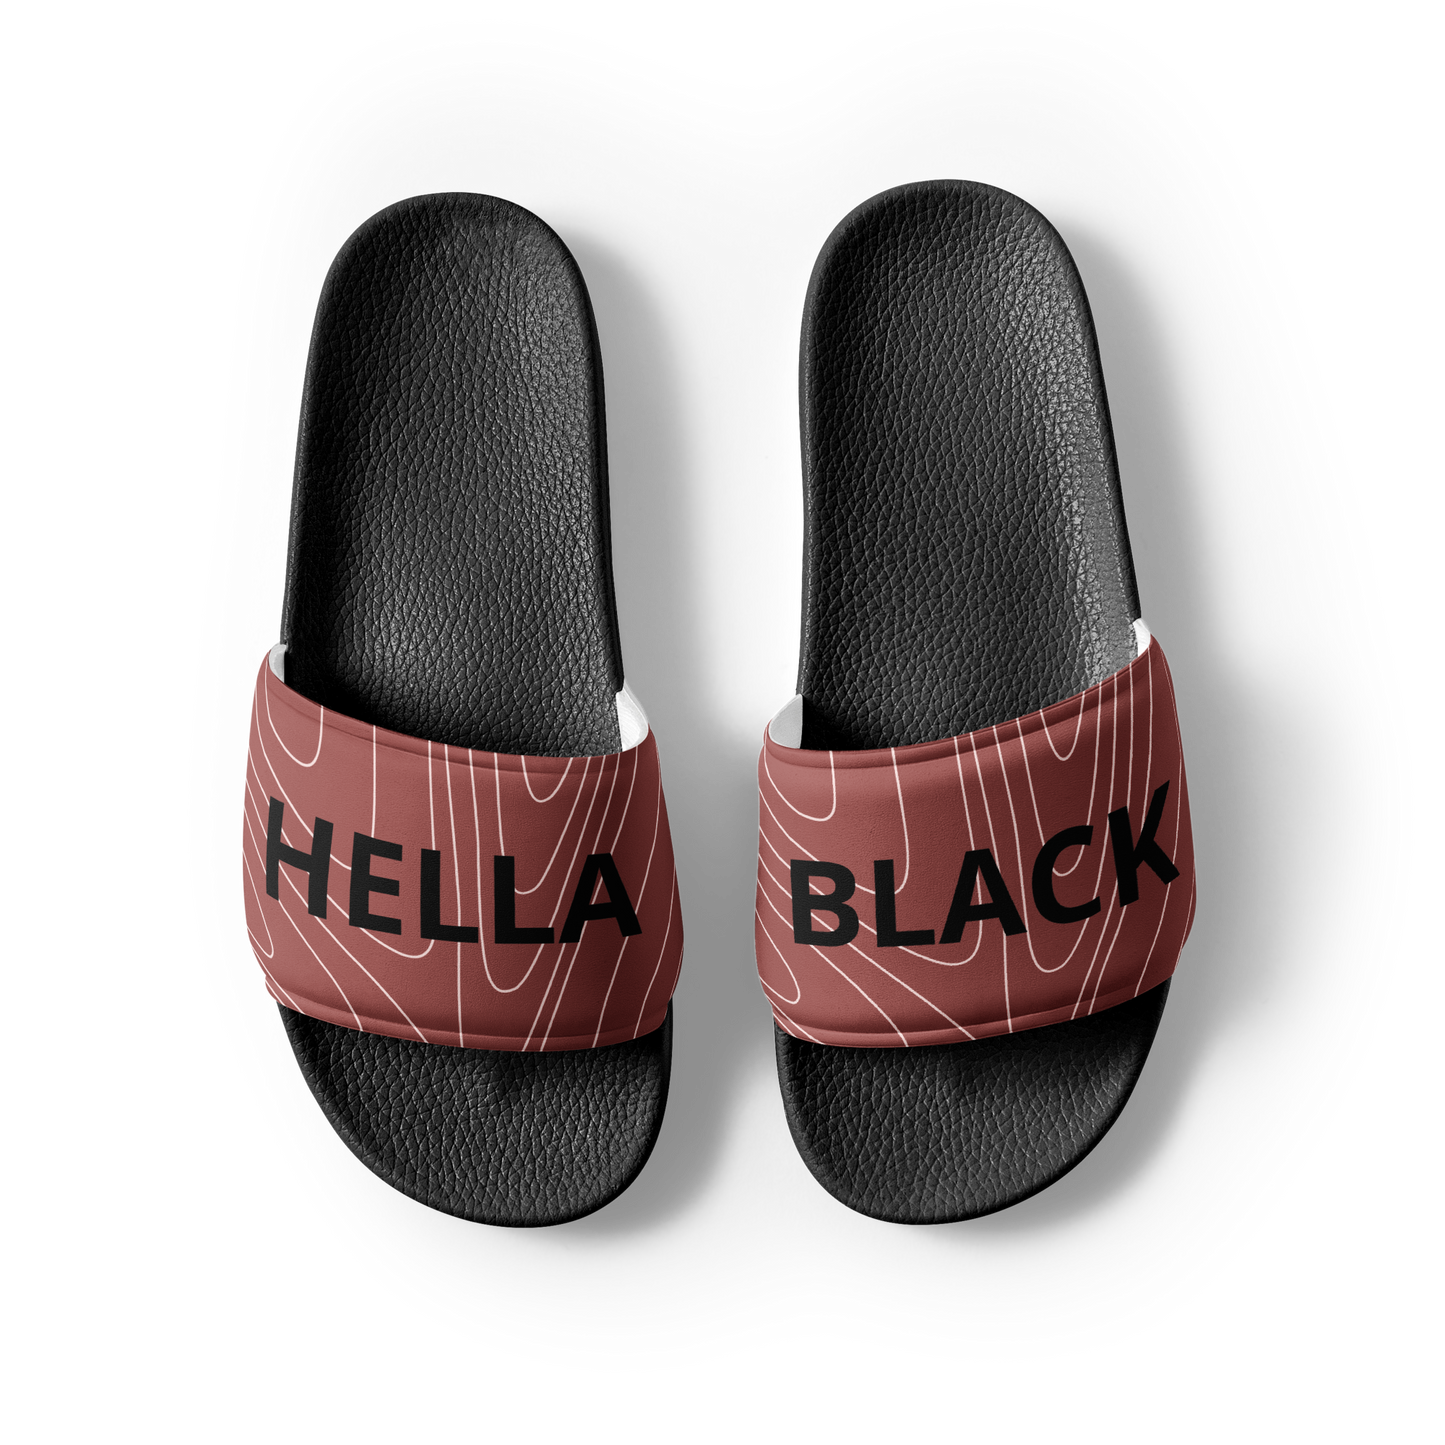 Hella Black Men's Slide Sandals